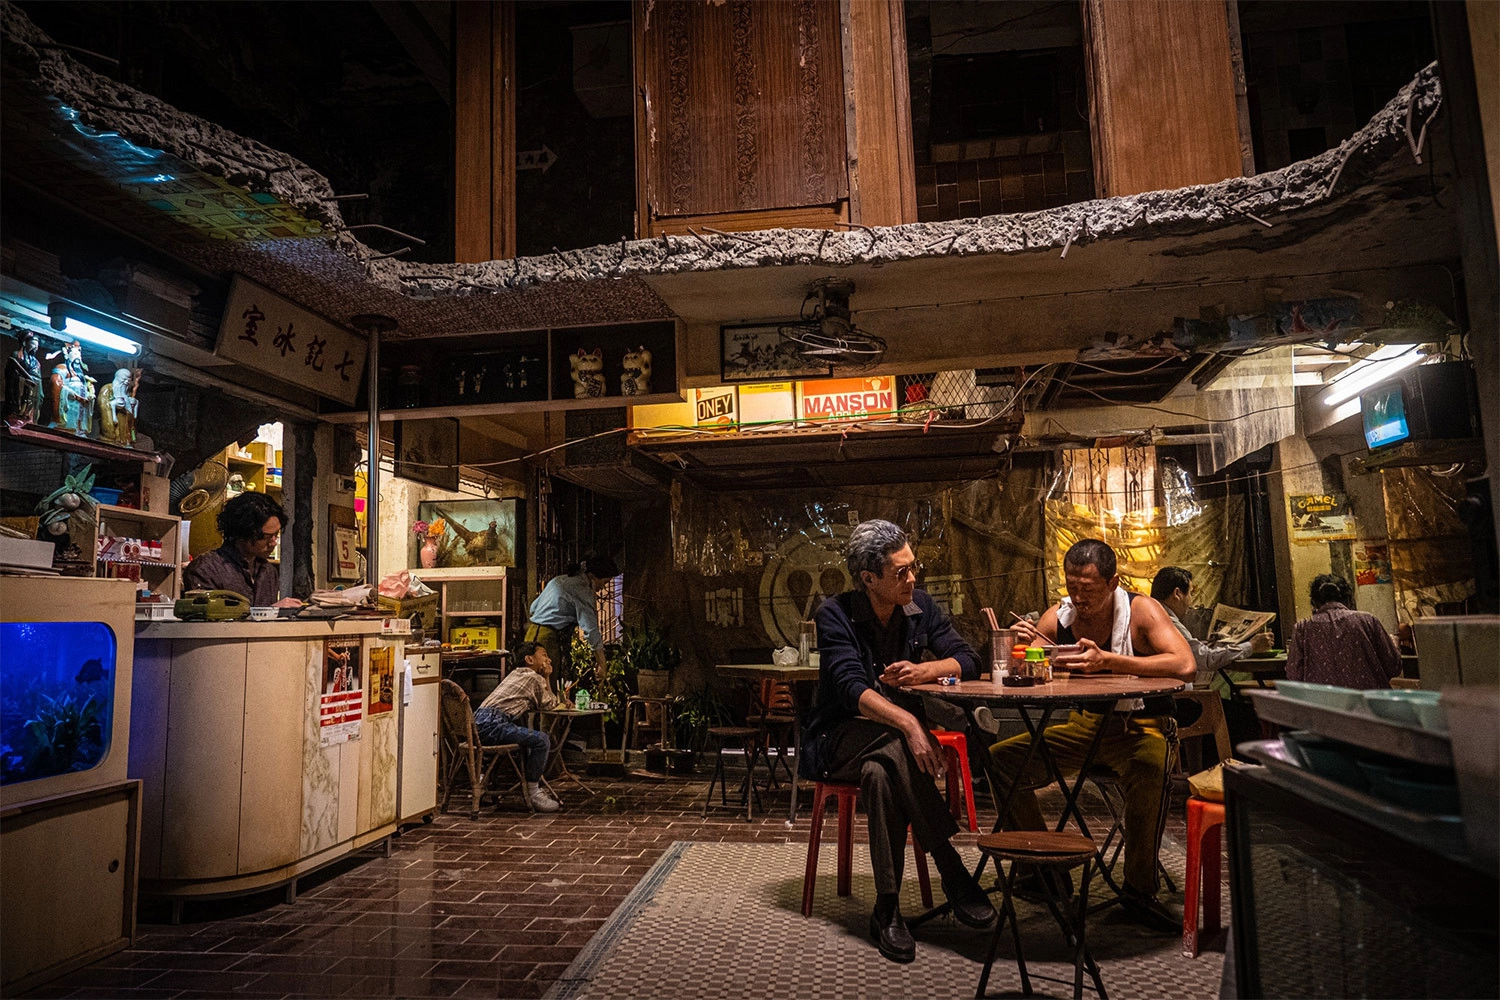 Phim lấy bối cảnh của khu ổ chuột Cửu Long Thành Trại nổi tiếng một thời